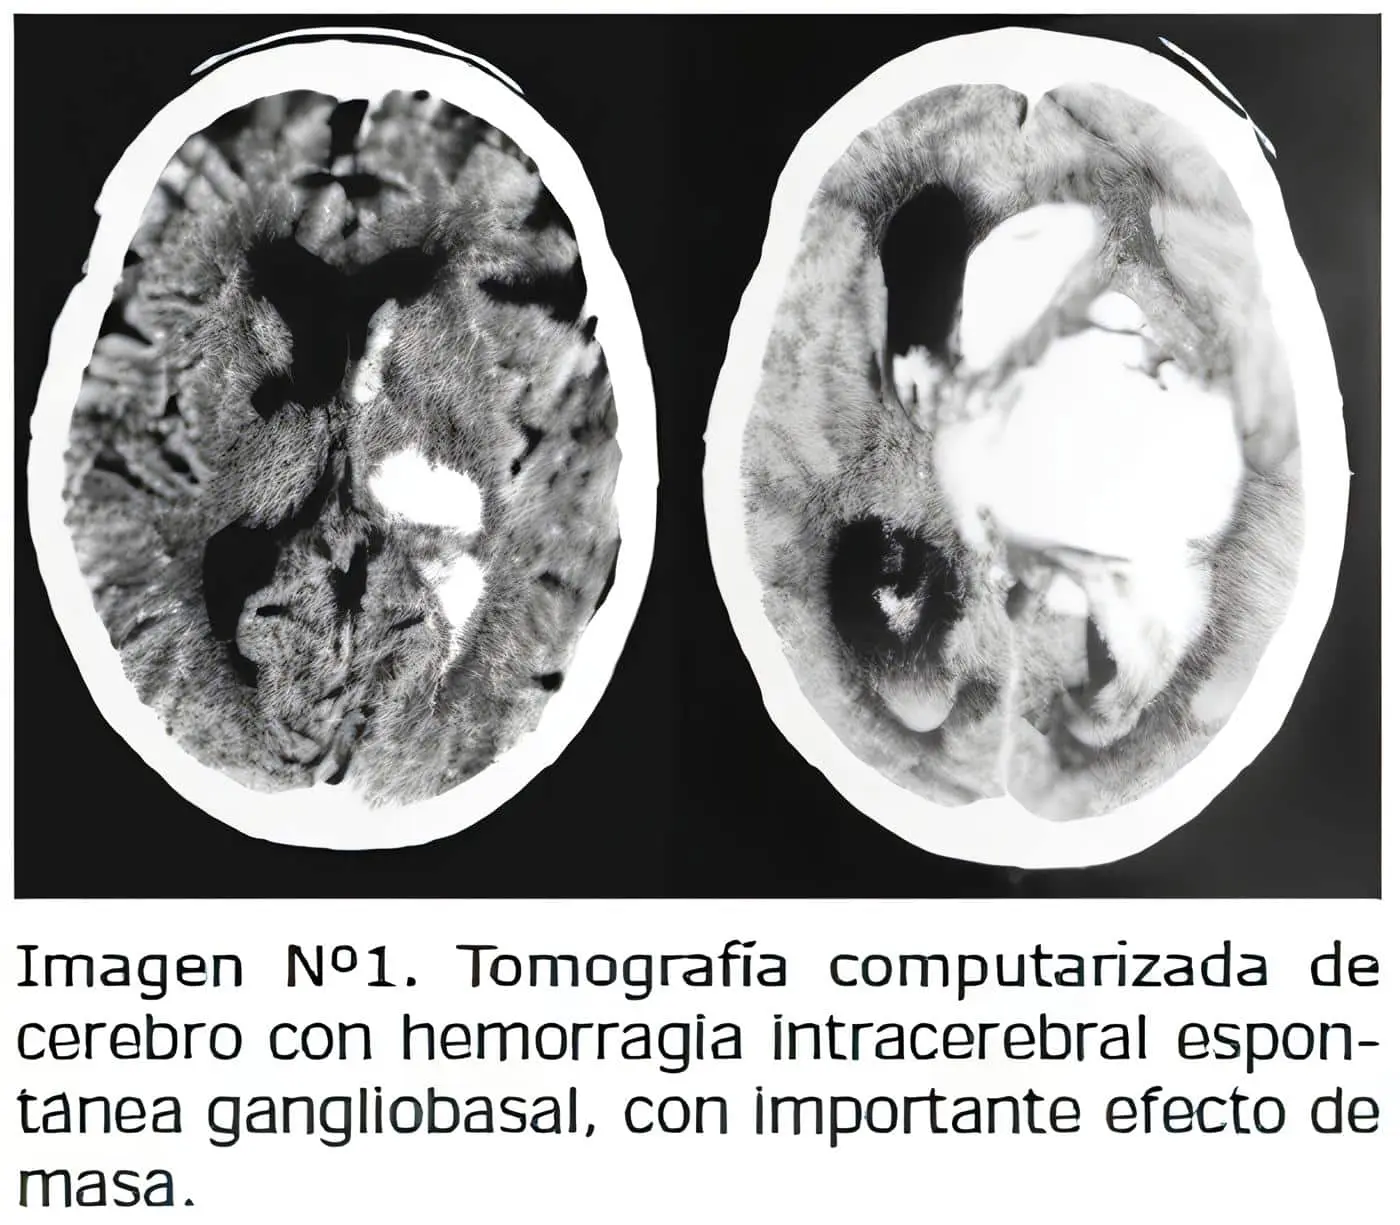  Tomografía computarizada, Hematoma Intracerebral